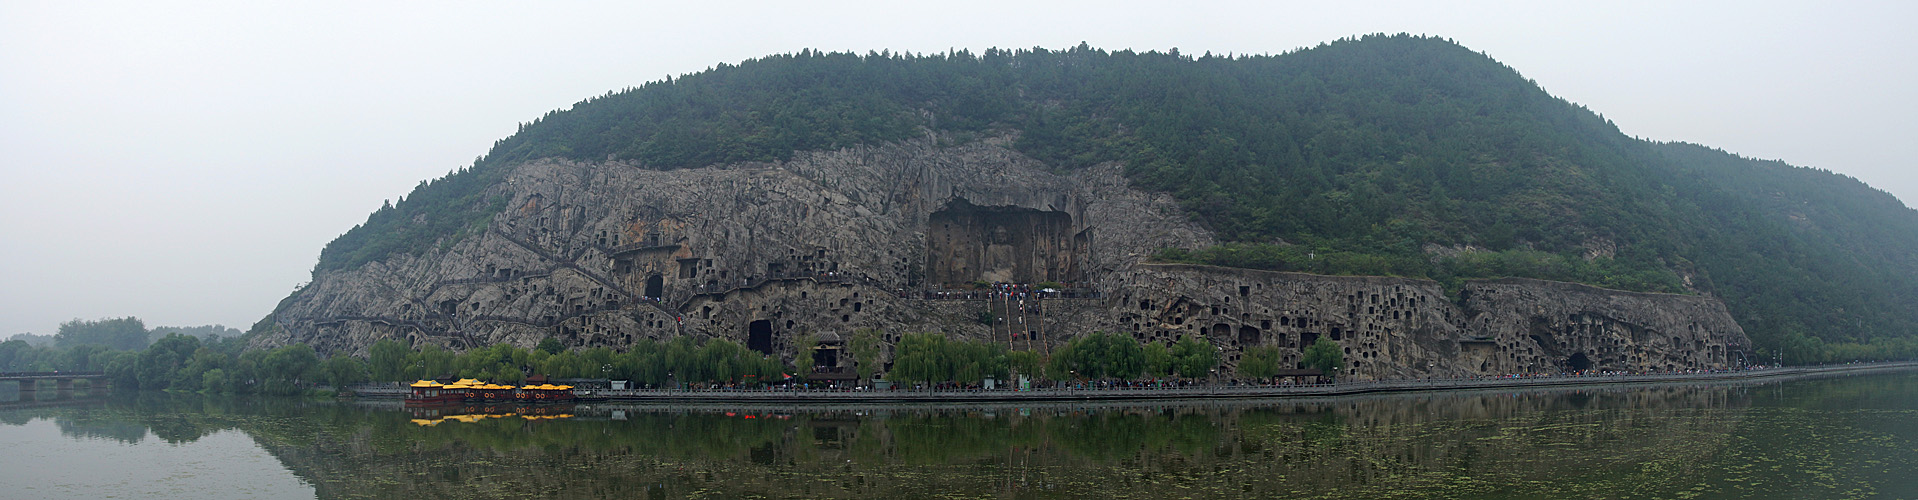 Photo panoramique des grottes de Longmen